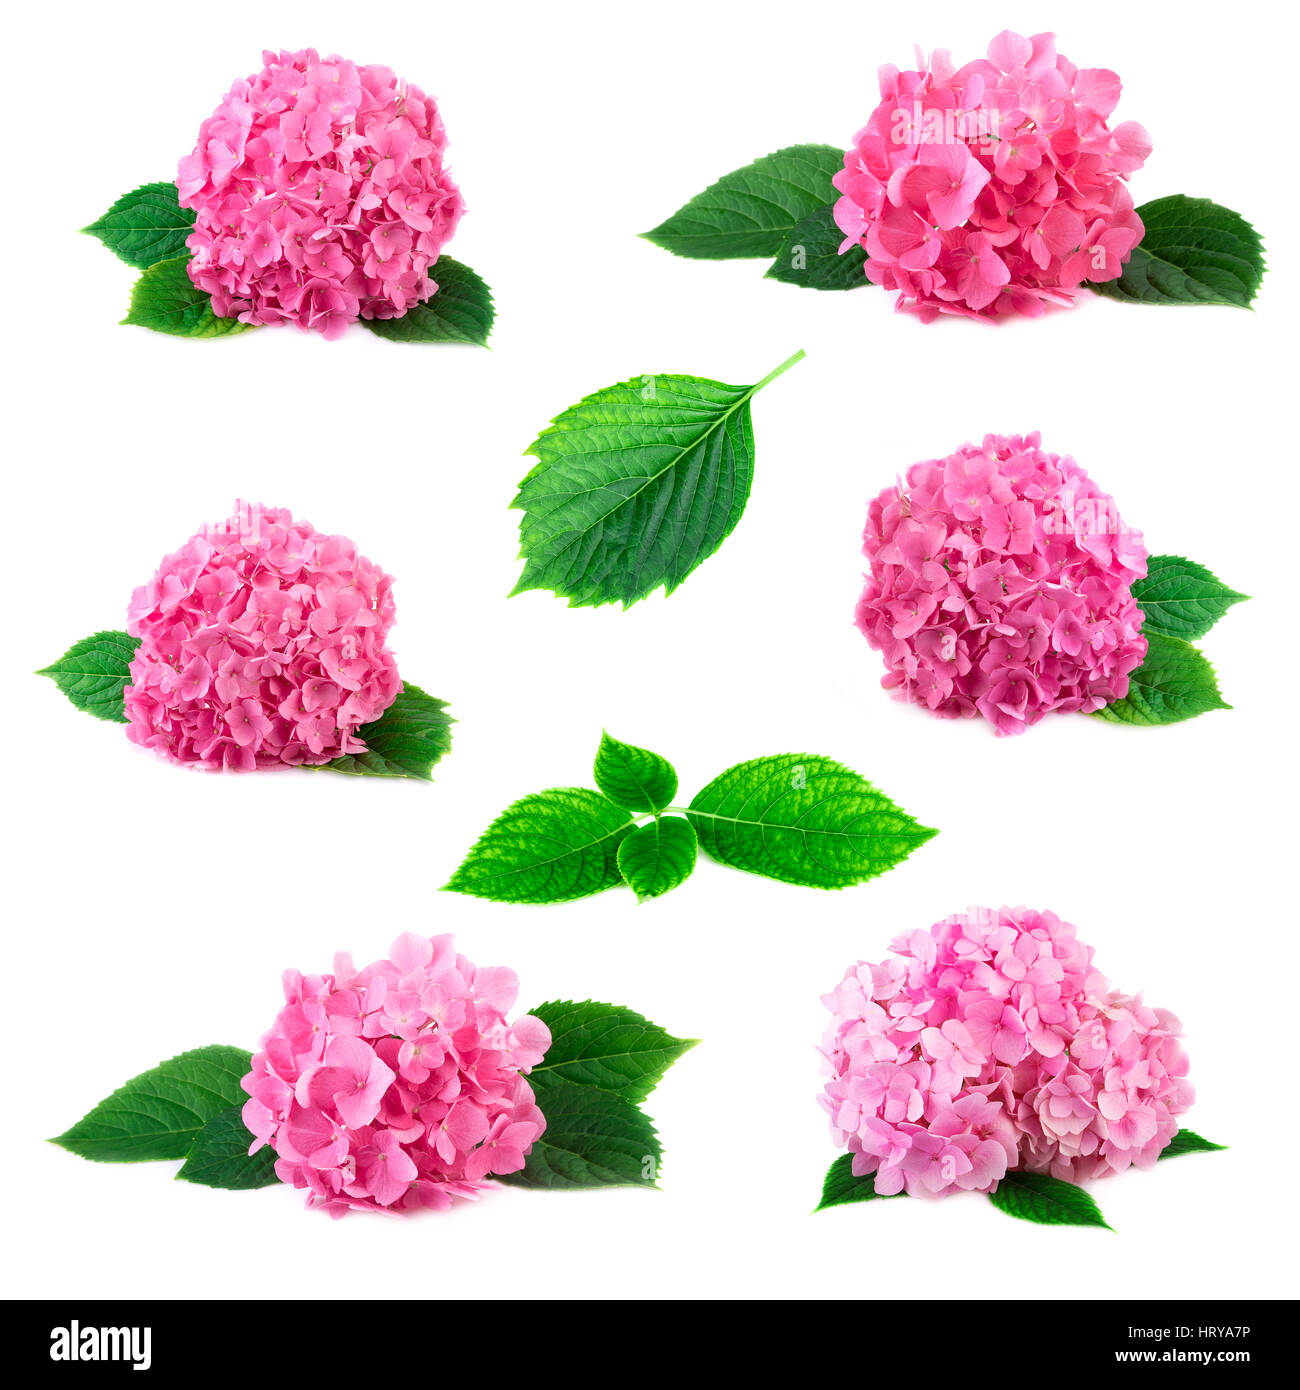 Sammlung von Hydrangea Hortensia Blüten mit grünen Blättern, die isoliert auf weiss. Rosa Flowerheads Hortensien Anordnung gesetzt collage Stockfoto